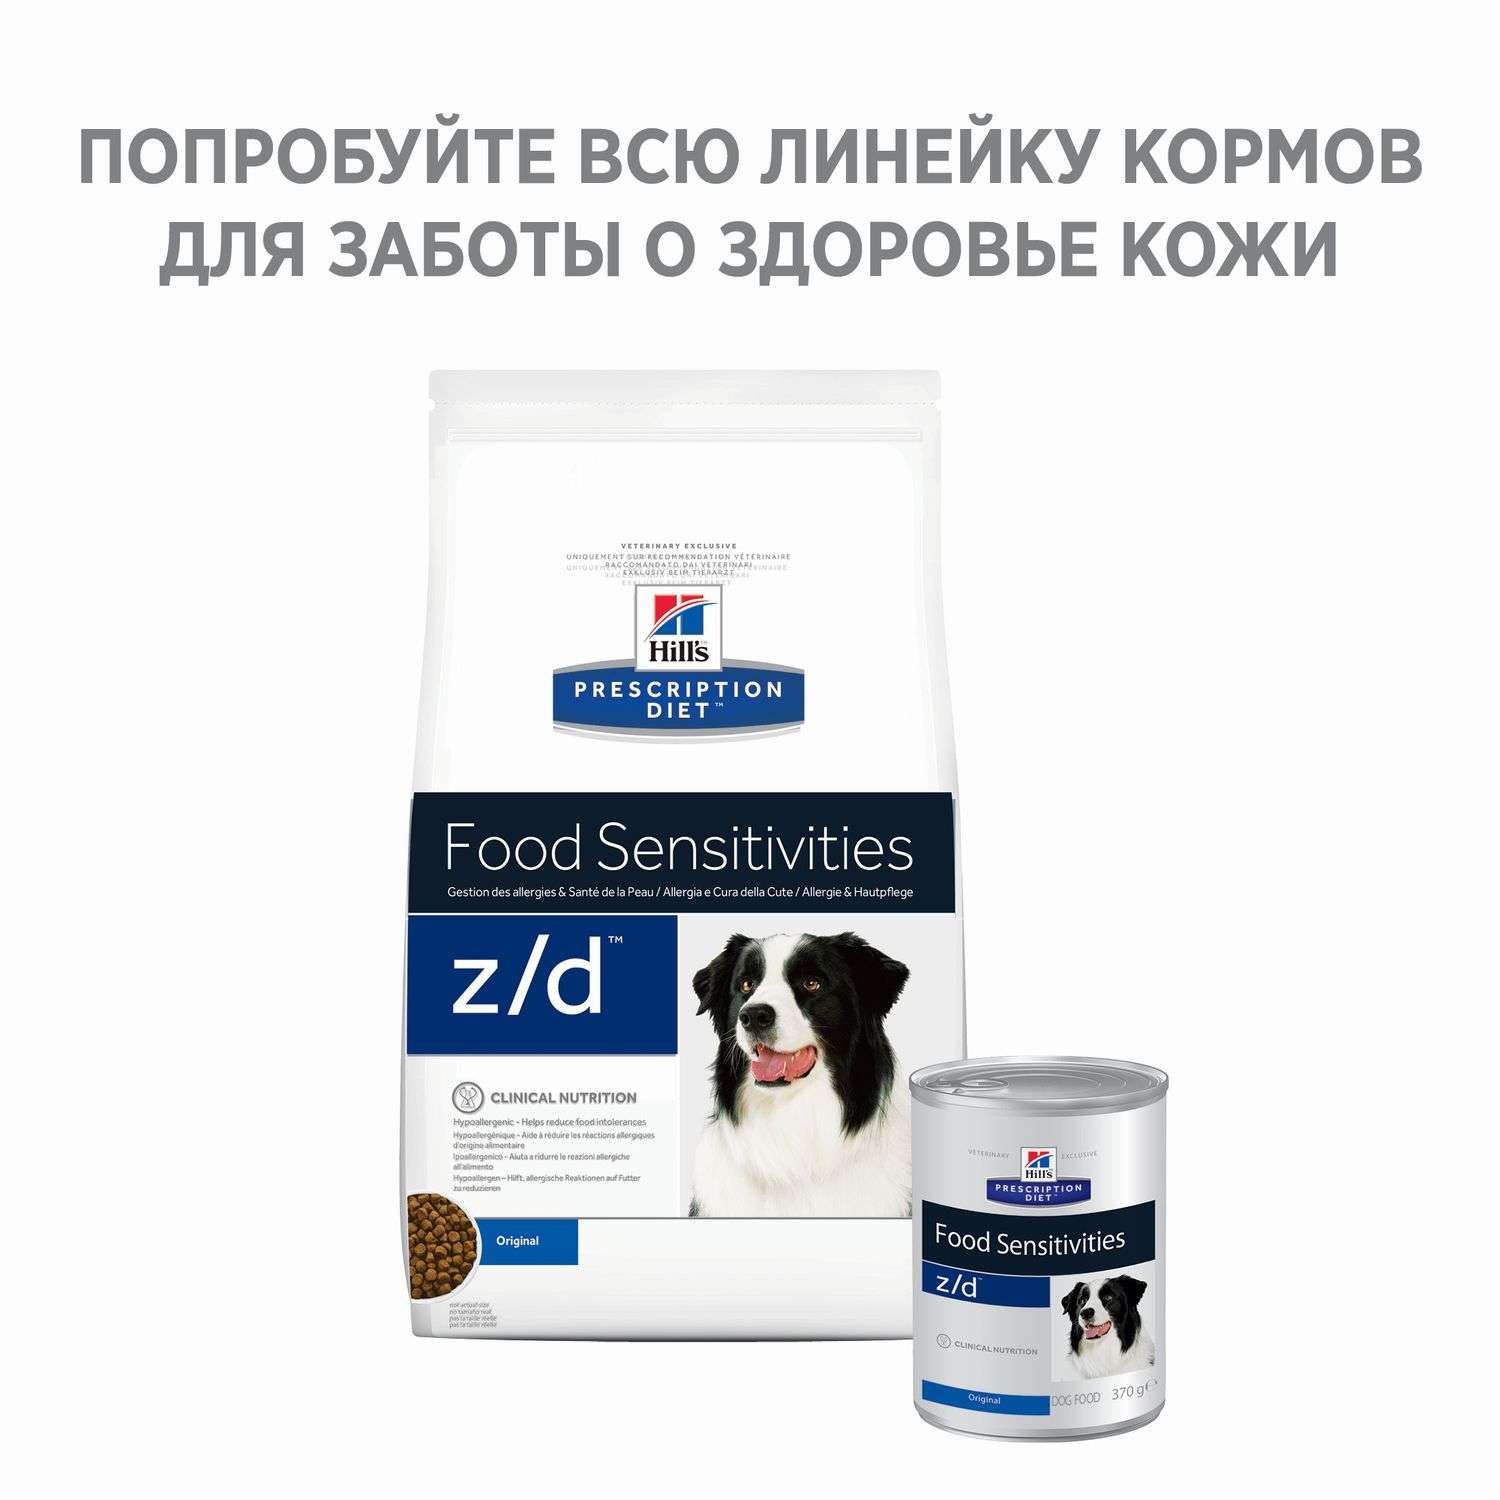 Корм для собак HILLS 3кг Prescription Diet z/d Food Sensitivities для здоровья кожи и при аллергии и заболеваниях кожи сухой - фото 4